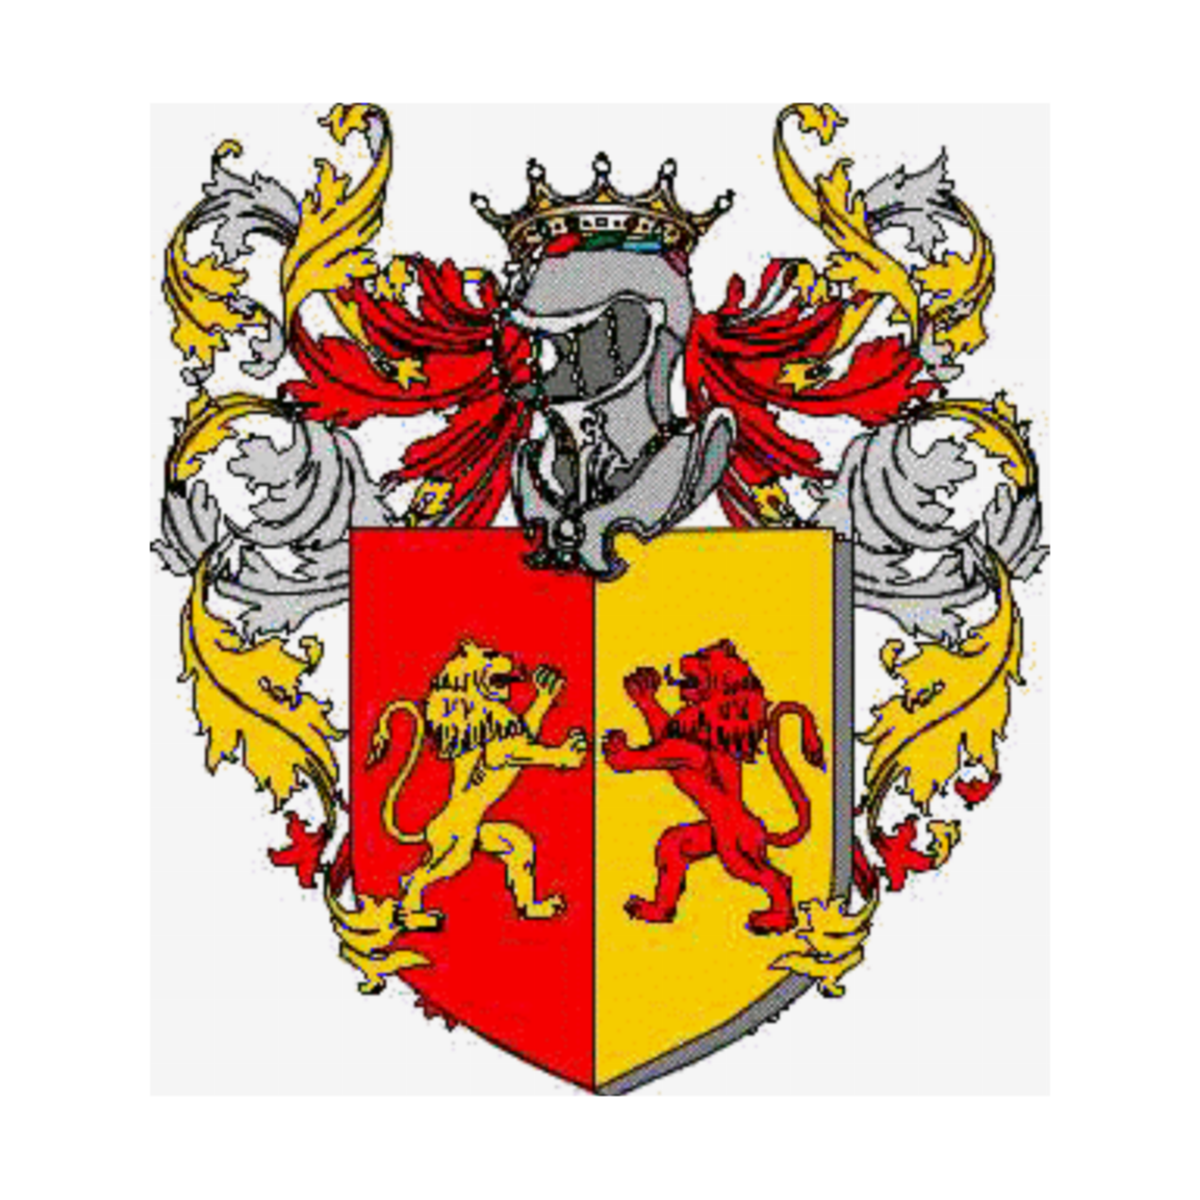 Wappen der Familie Dimaina